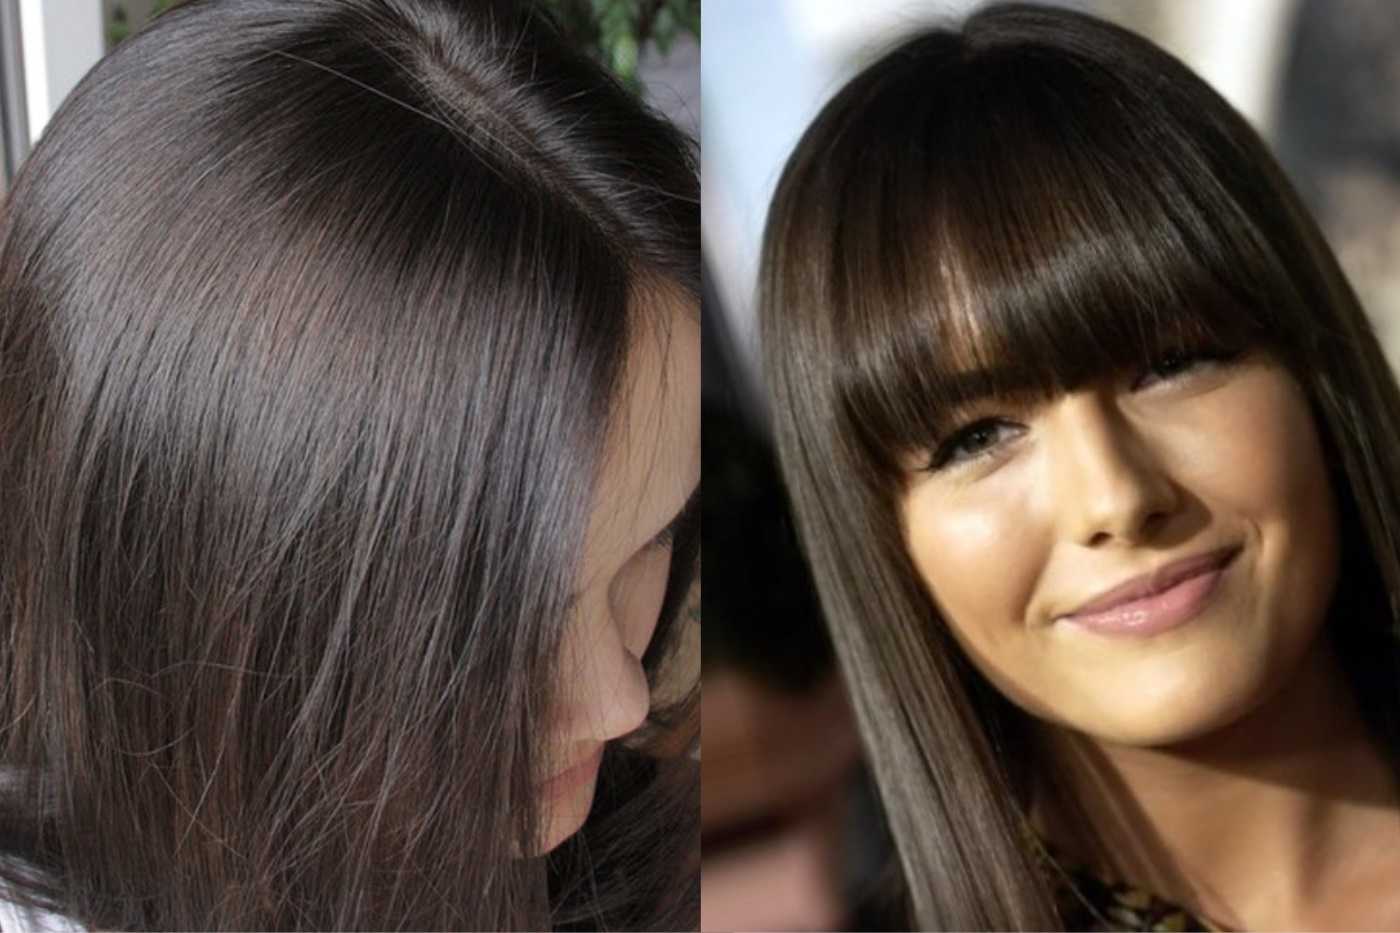 Пепельно каштановый цвет волос фото до и после окрашивания